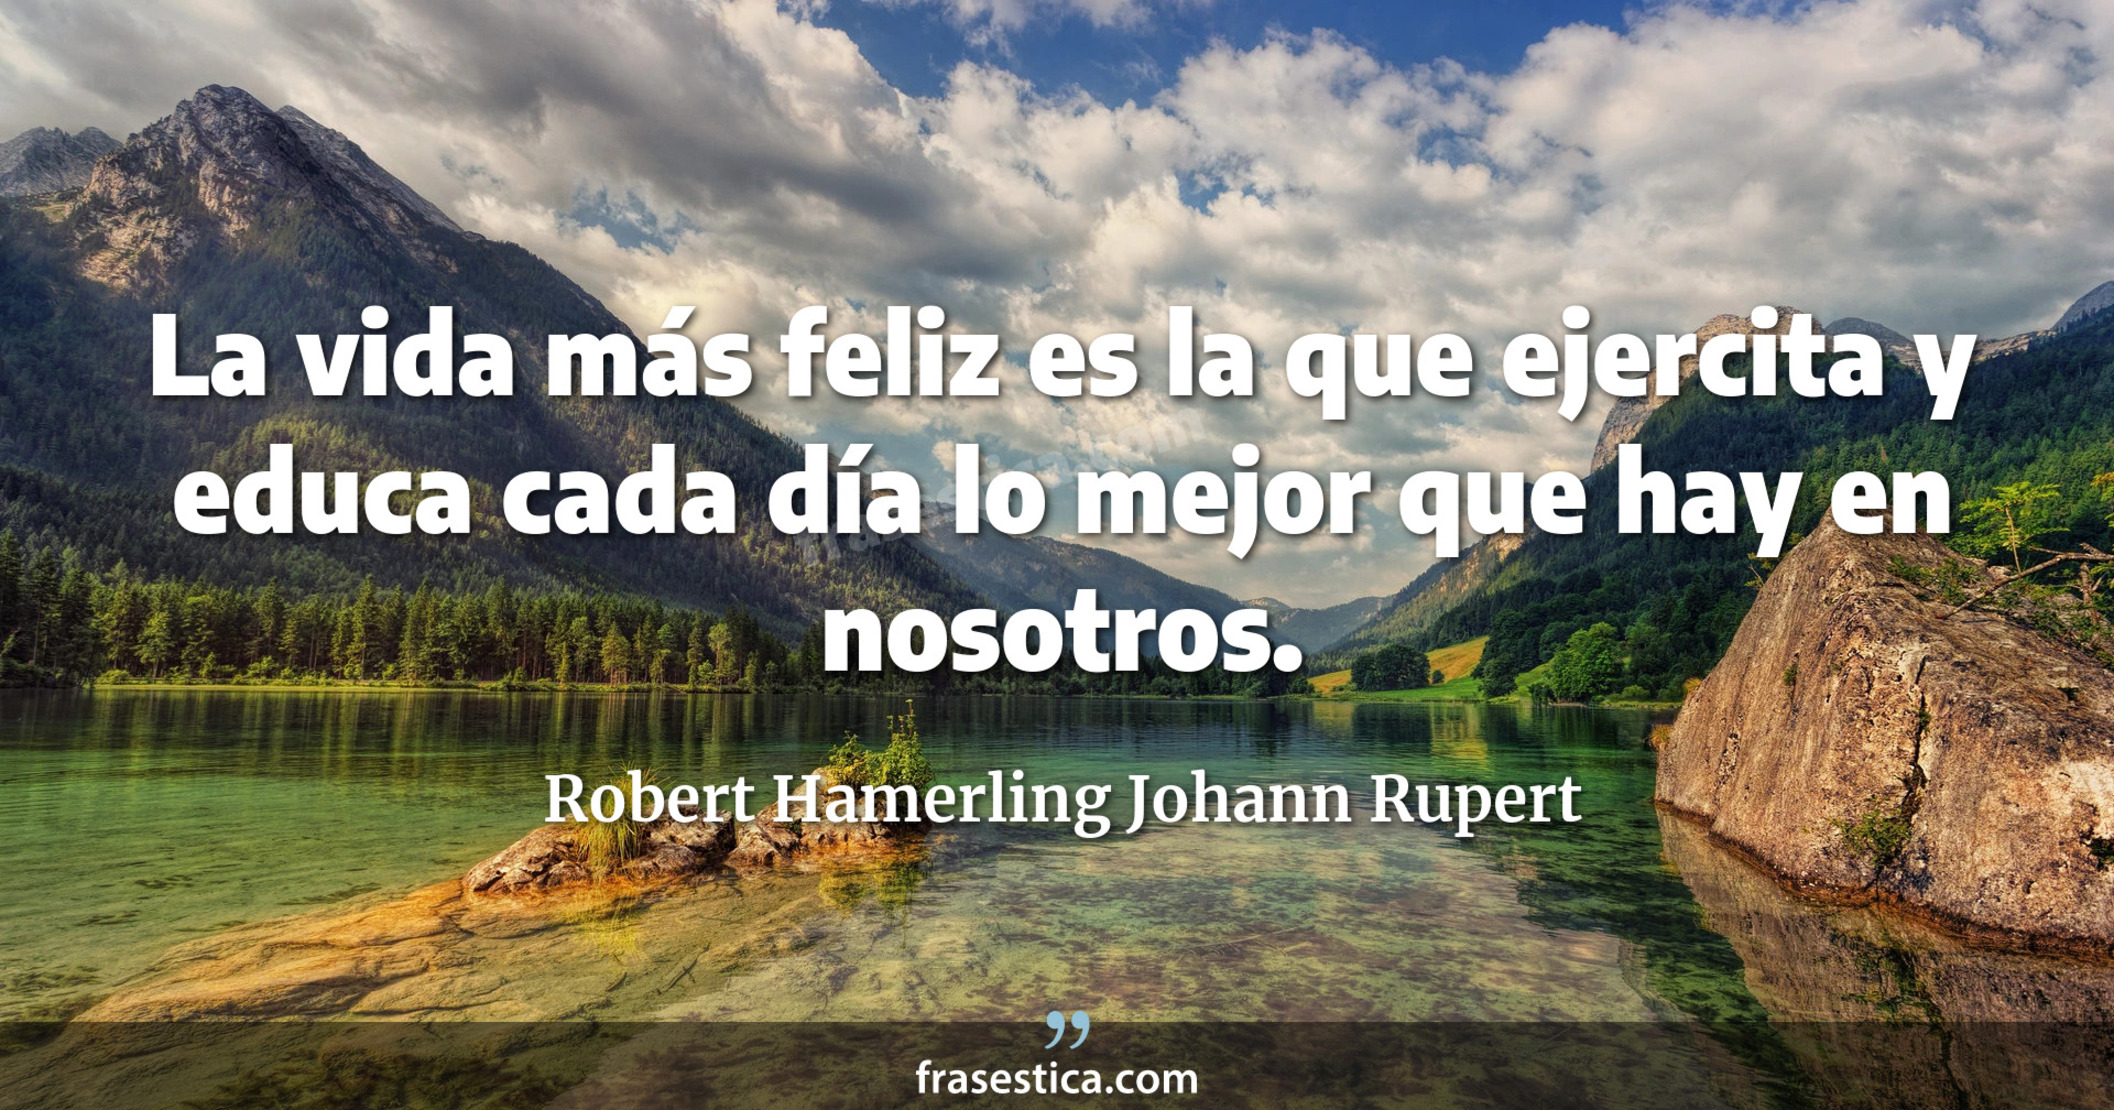 La vida más feliz es la que ejercita y educa cada día lo mejor que hay en nosotros. - Robert Hamerling Johann Rupert